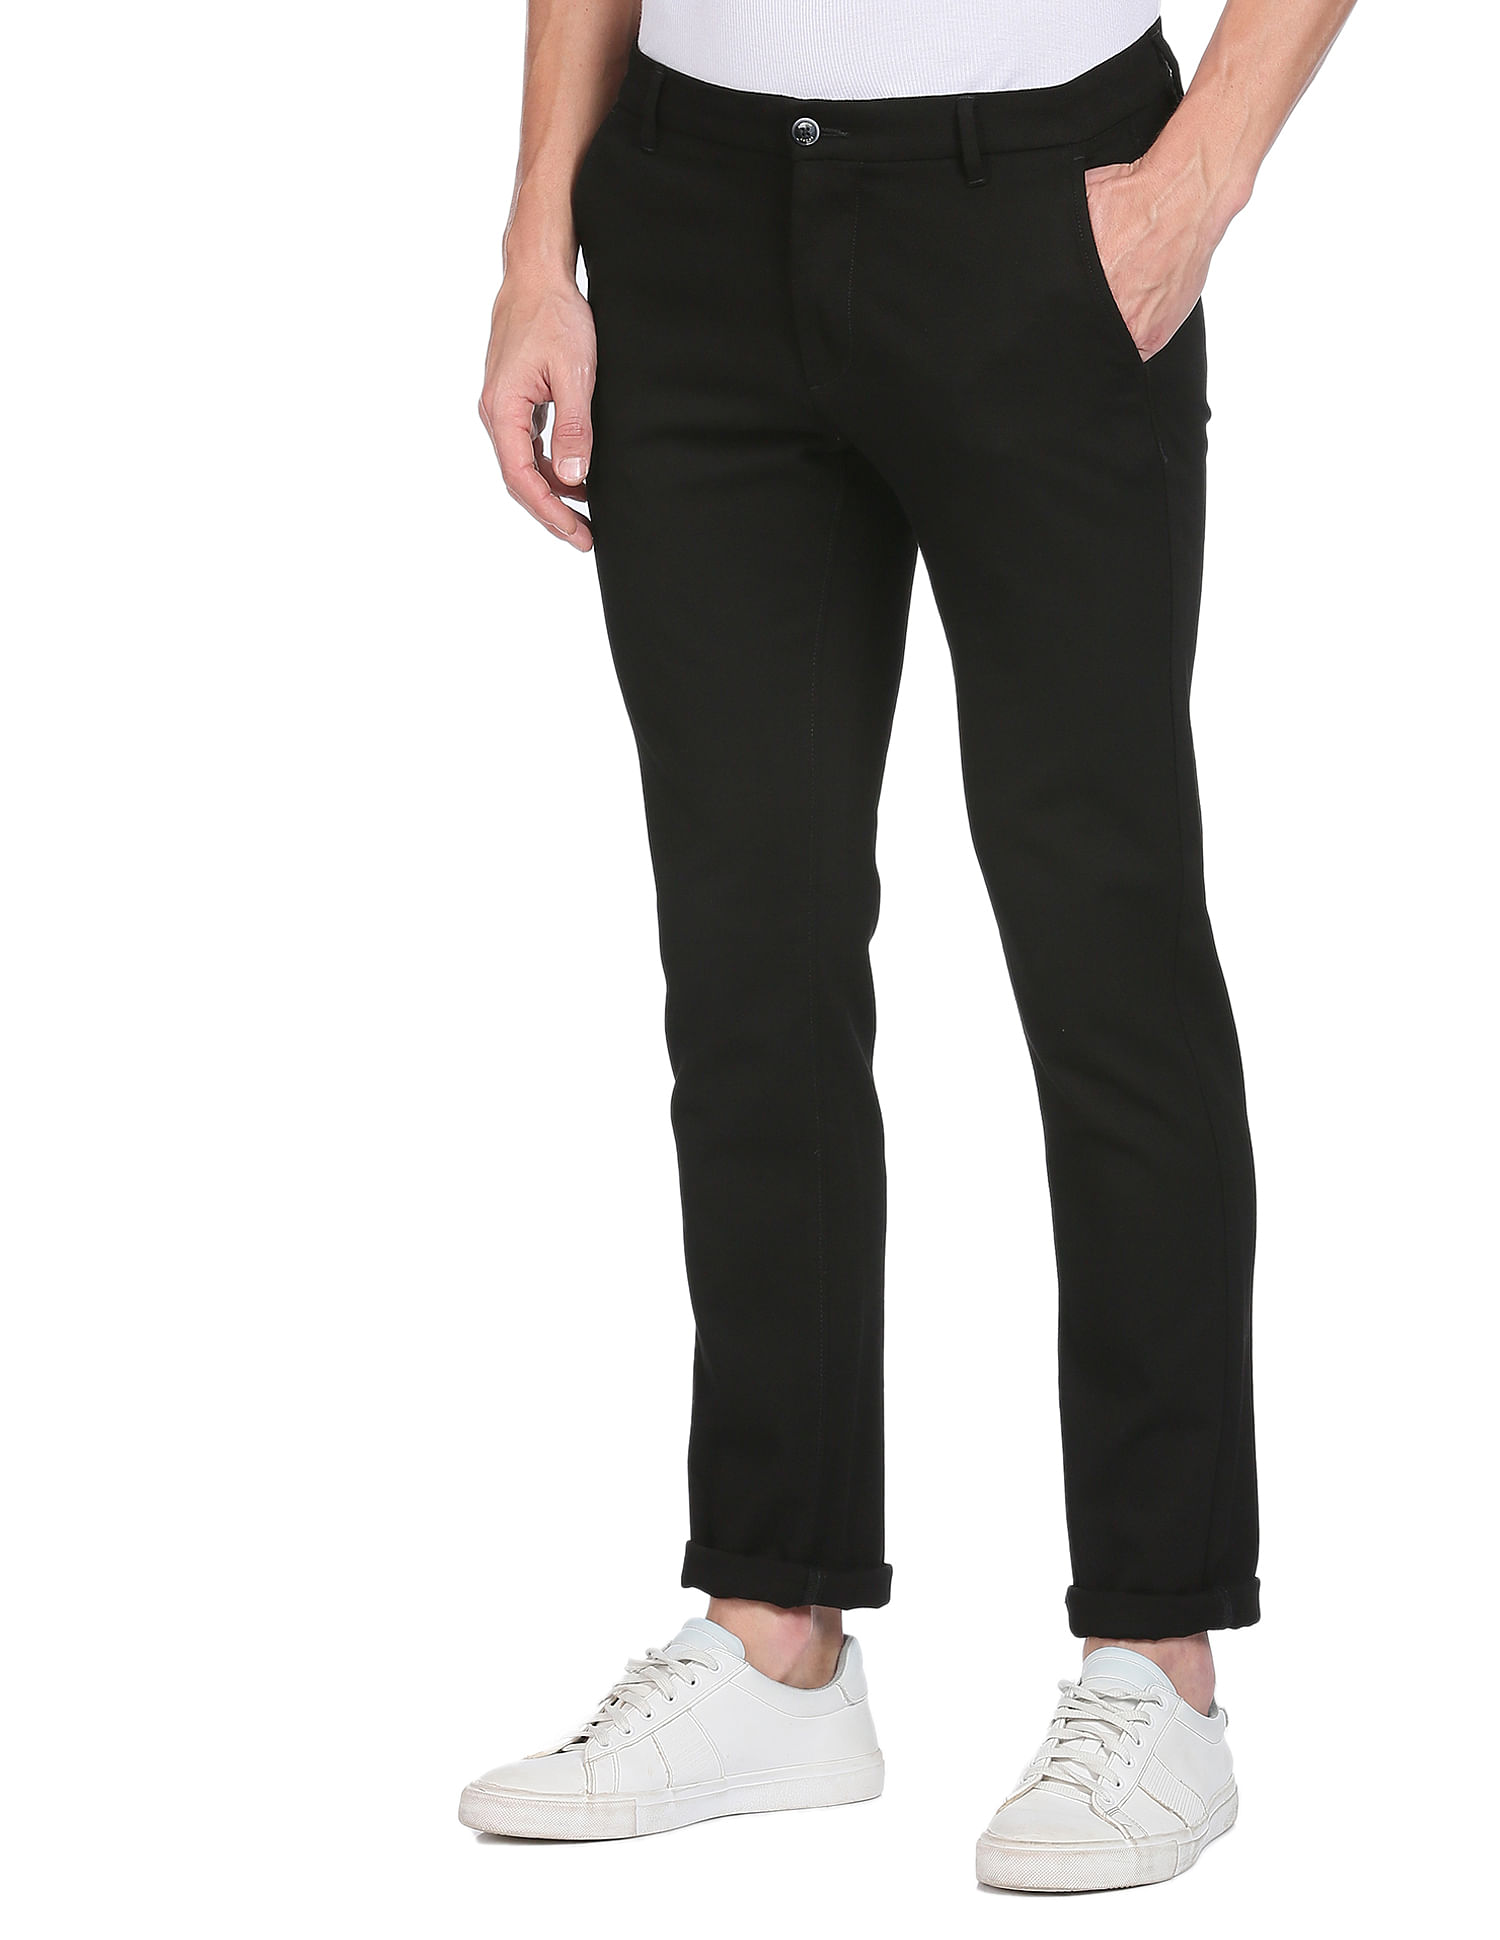 ARROW Regular Fit Women Black Trousers  Buy BLACK ARROW Regular Fit Women Black  Trousers Online at Best Prices in India  Flipkartcom